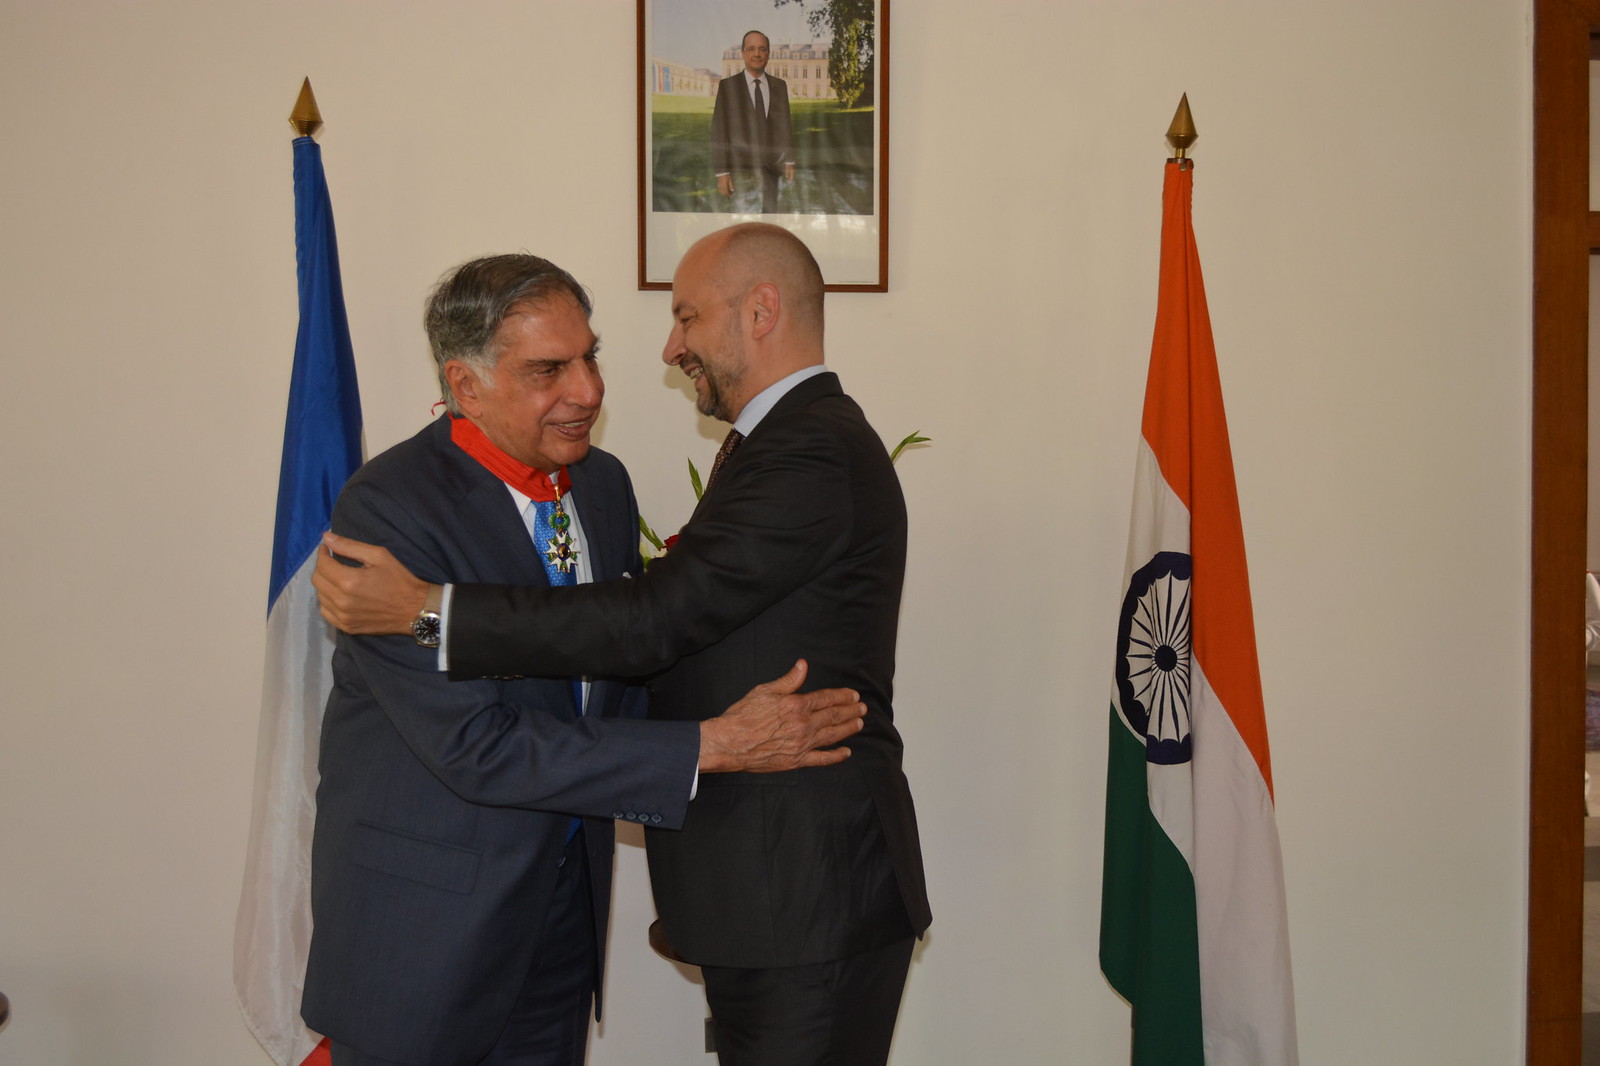 H.E. Mr François Richier, Ambassador of France to India, today conferred the highest French civilian distinction, Commandeur de la Légion d’Honneur (Commander of the Legion of Honour) on Shri Ratan Tata.